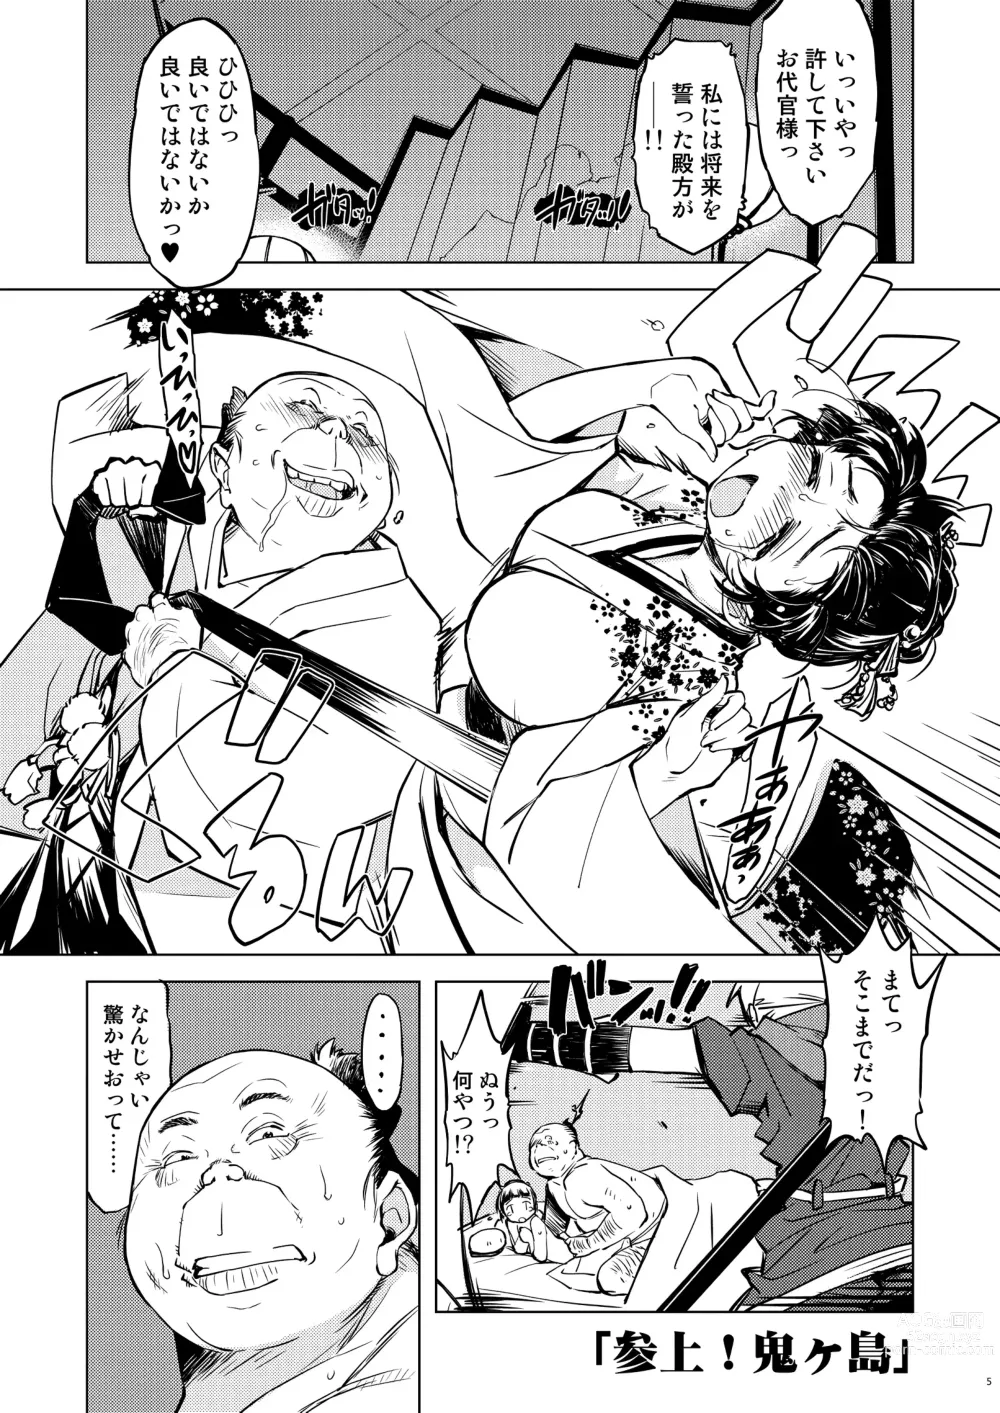 Page 5 of doujinshi 鬼ヶ島総集編